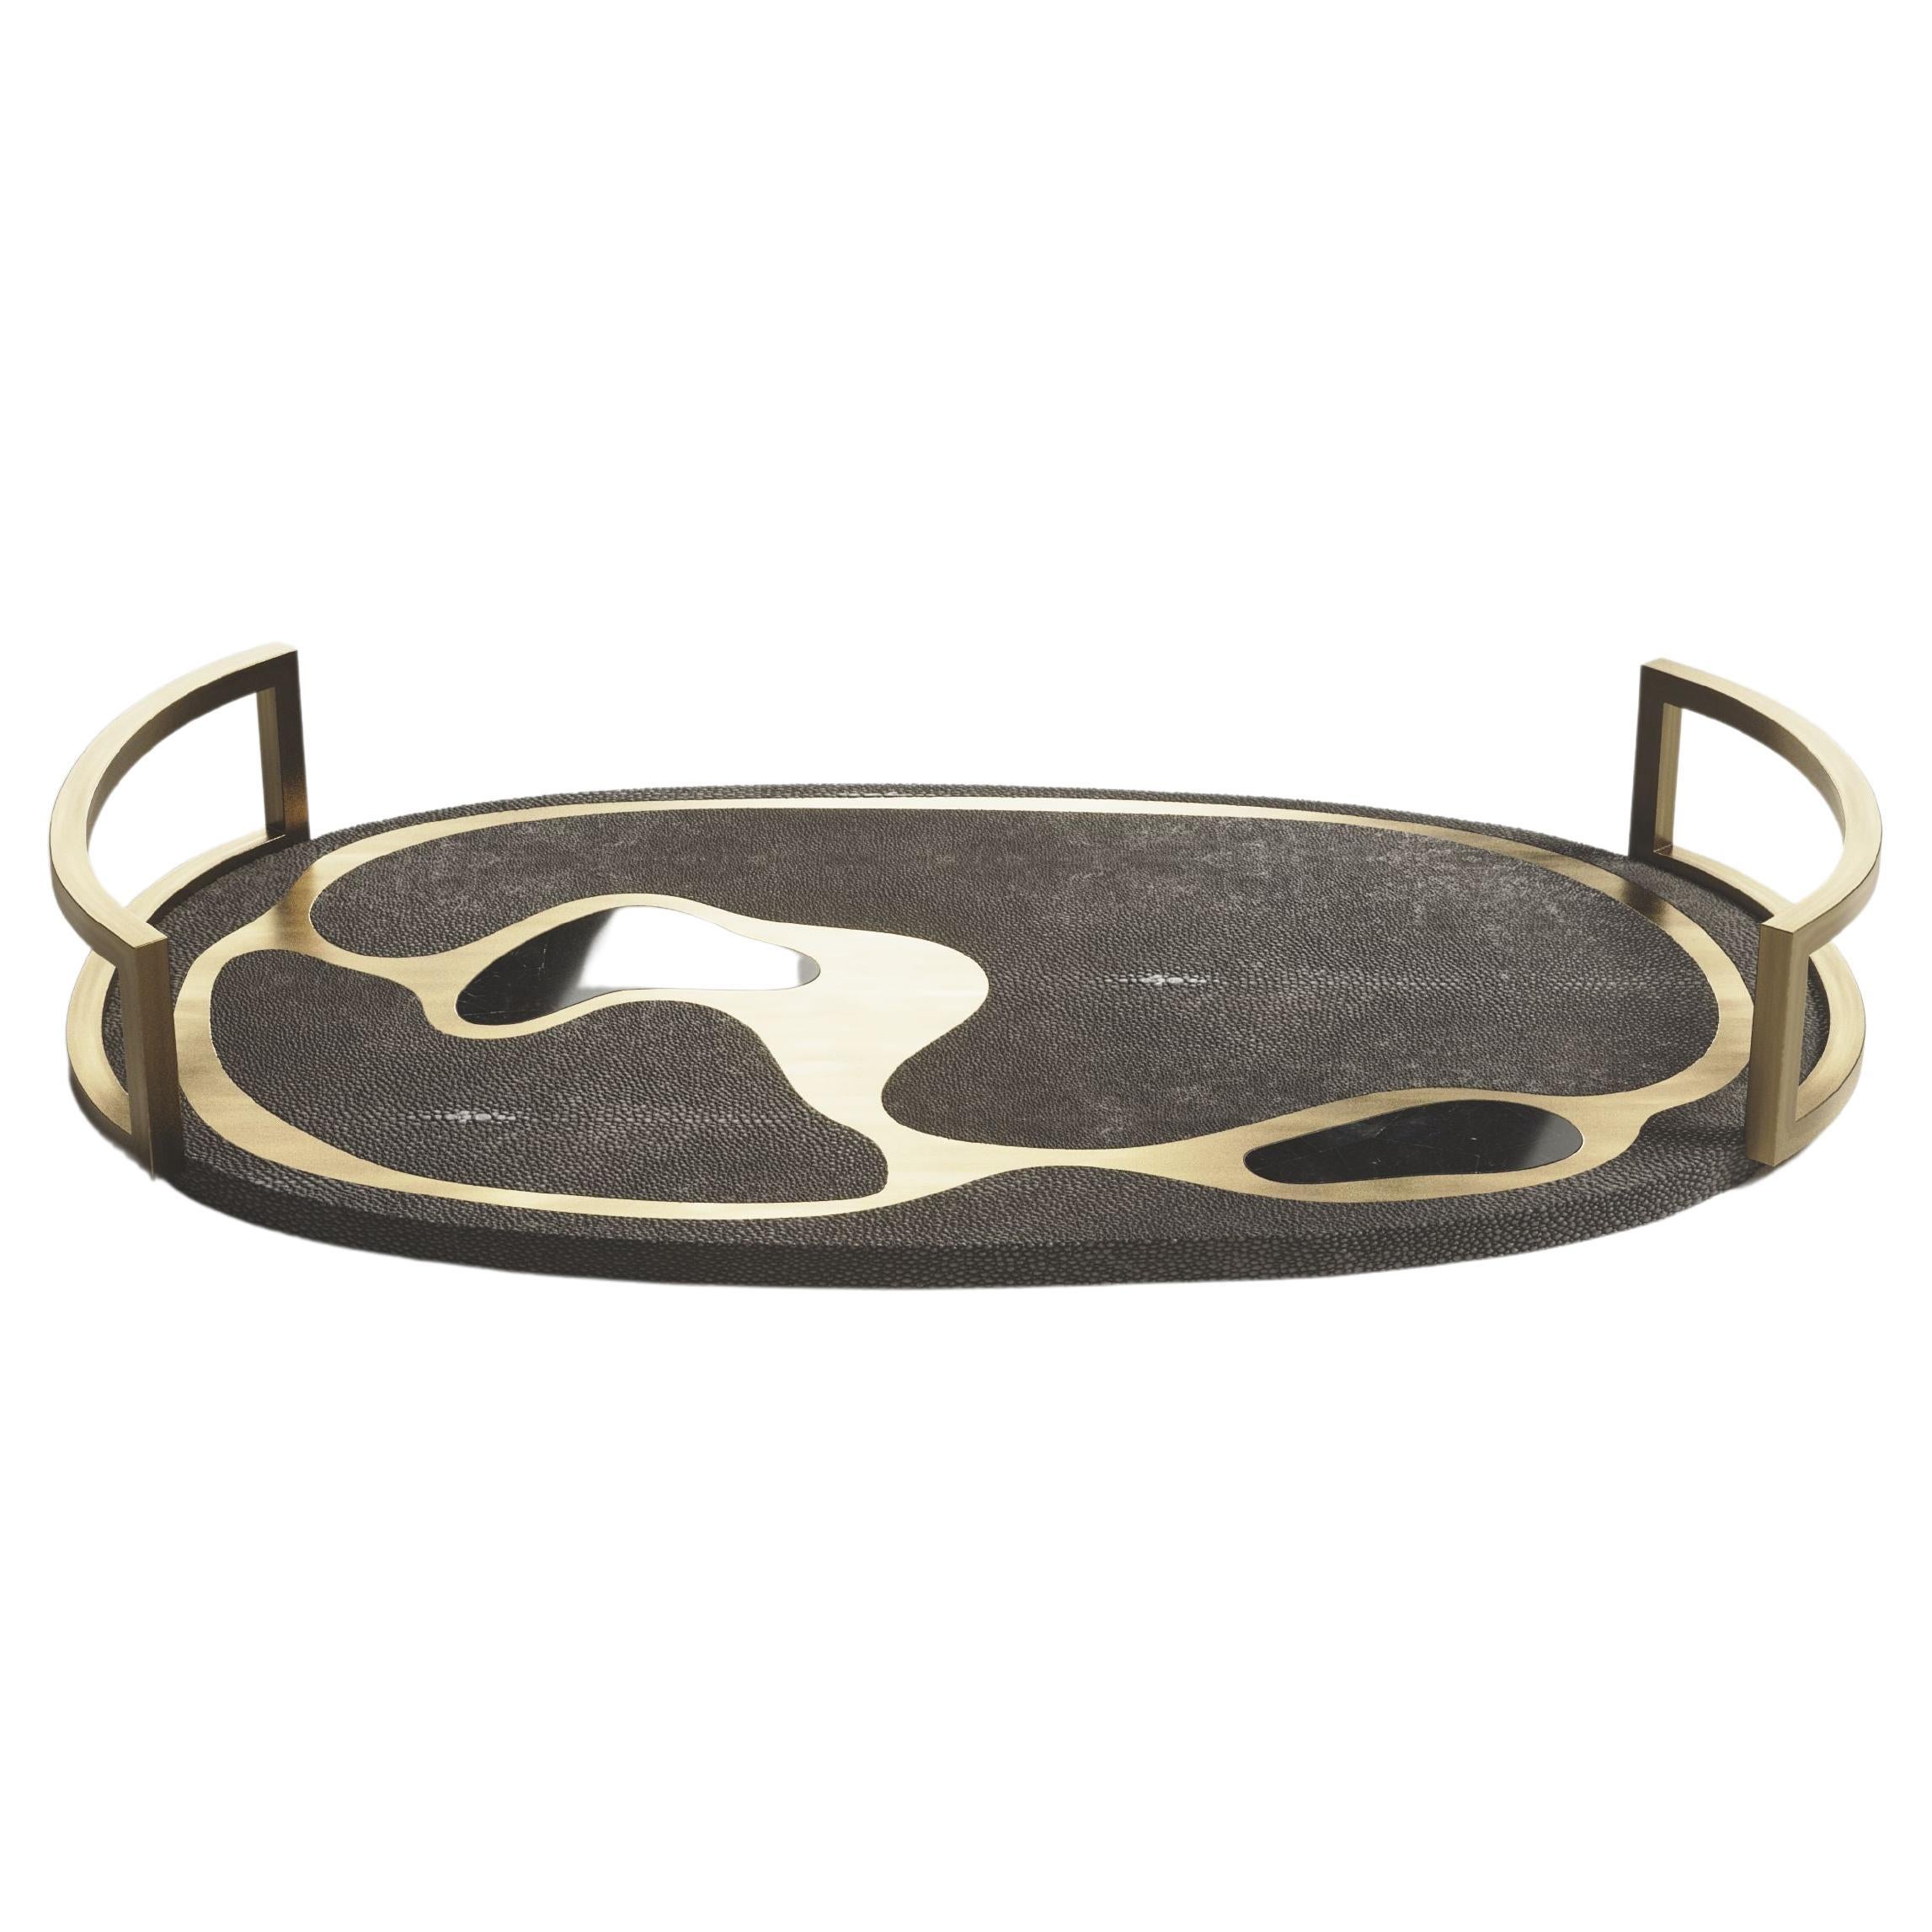 Ovales Tablett in schwarzem Kohle-Schwarzem Chagrinleder mit Bronze-Patina-Messing von Kifu Paris